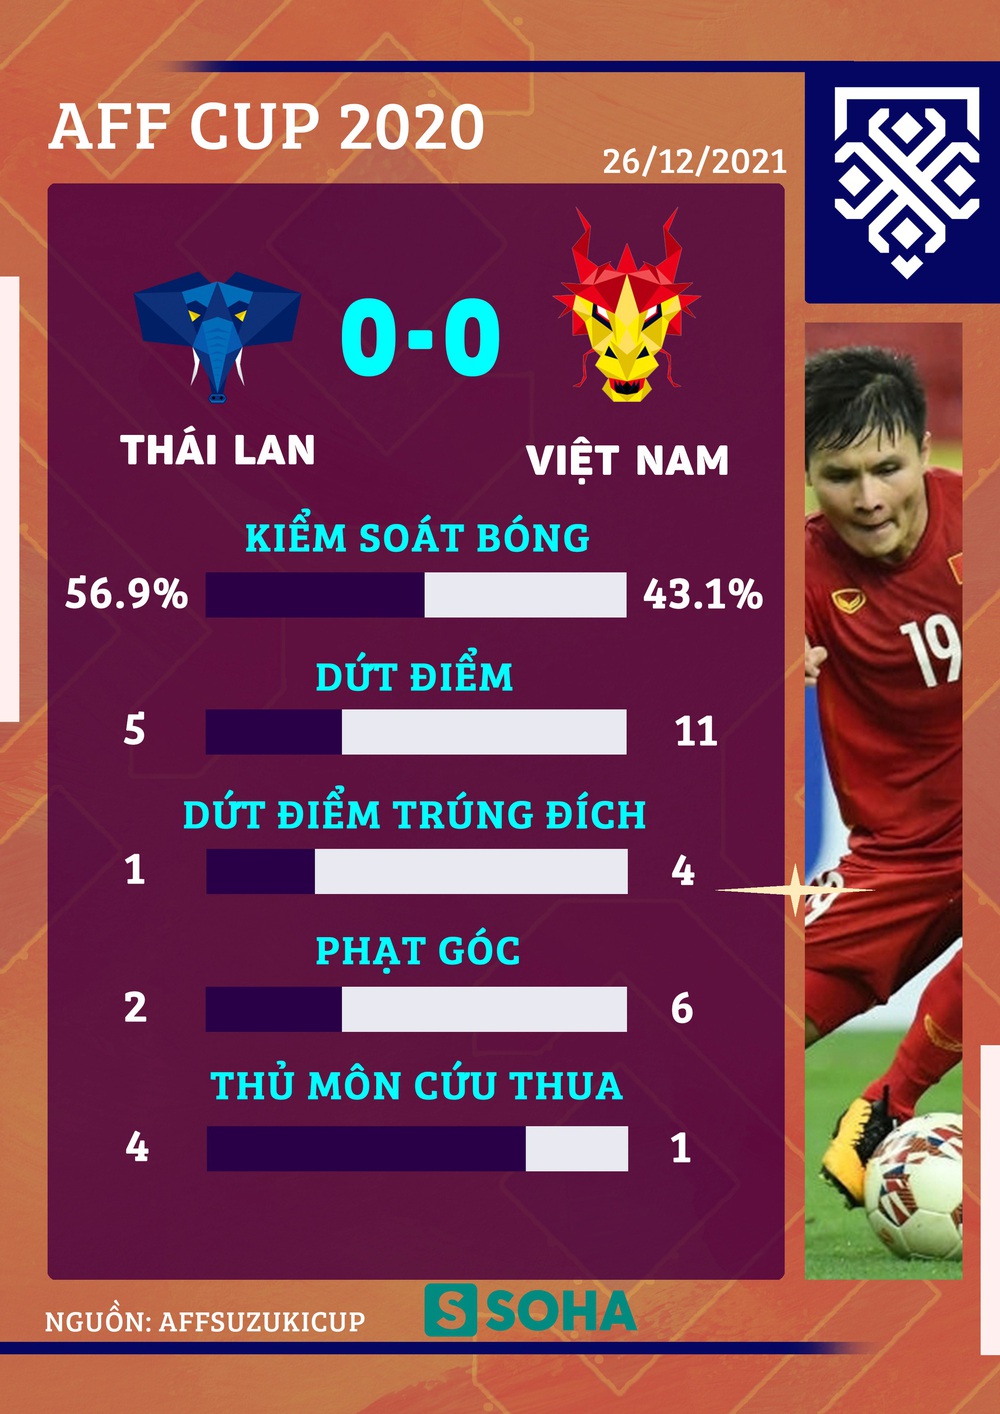 Chơi một hiệp tuyệt không hối hận, đội tuyển Việt Nam rời giải trong sự hối tiếc đớn đau - Ảnh 6.